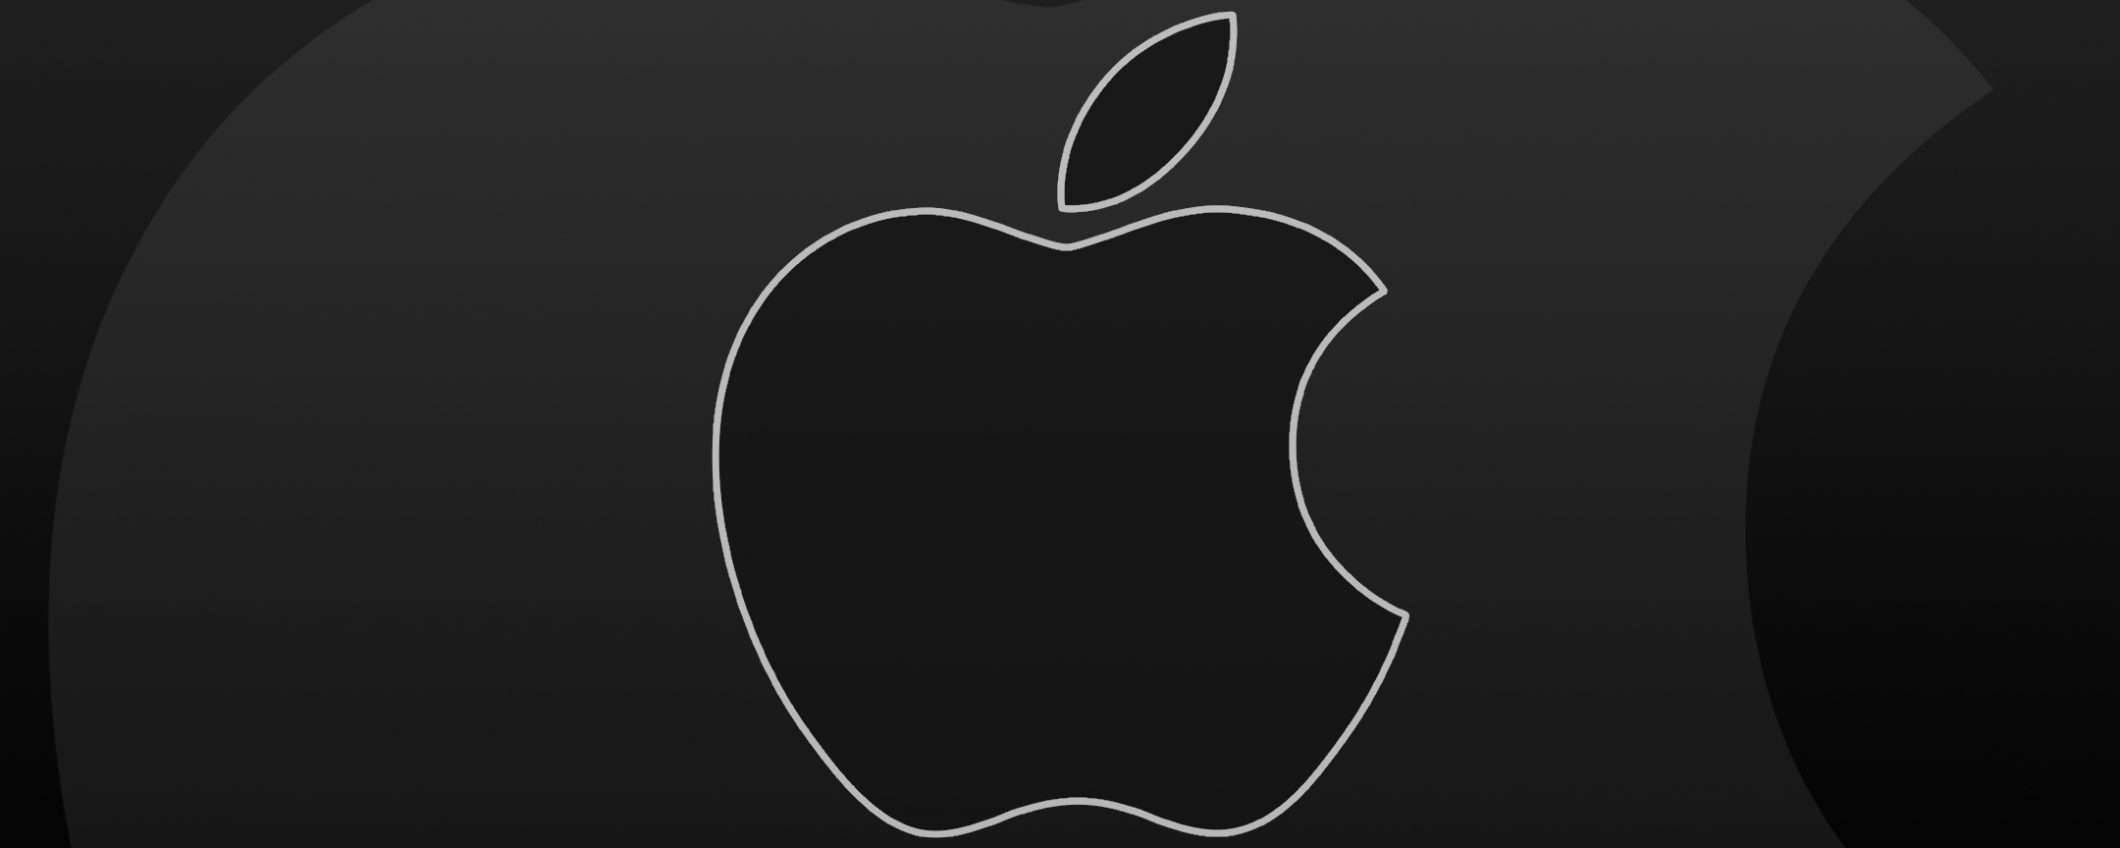 Anche Apple per l'acquisizione di TikTok?